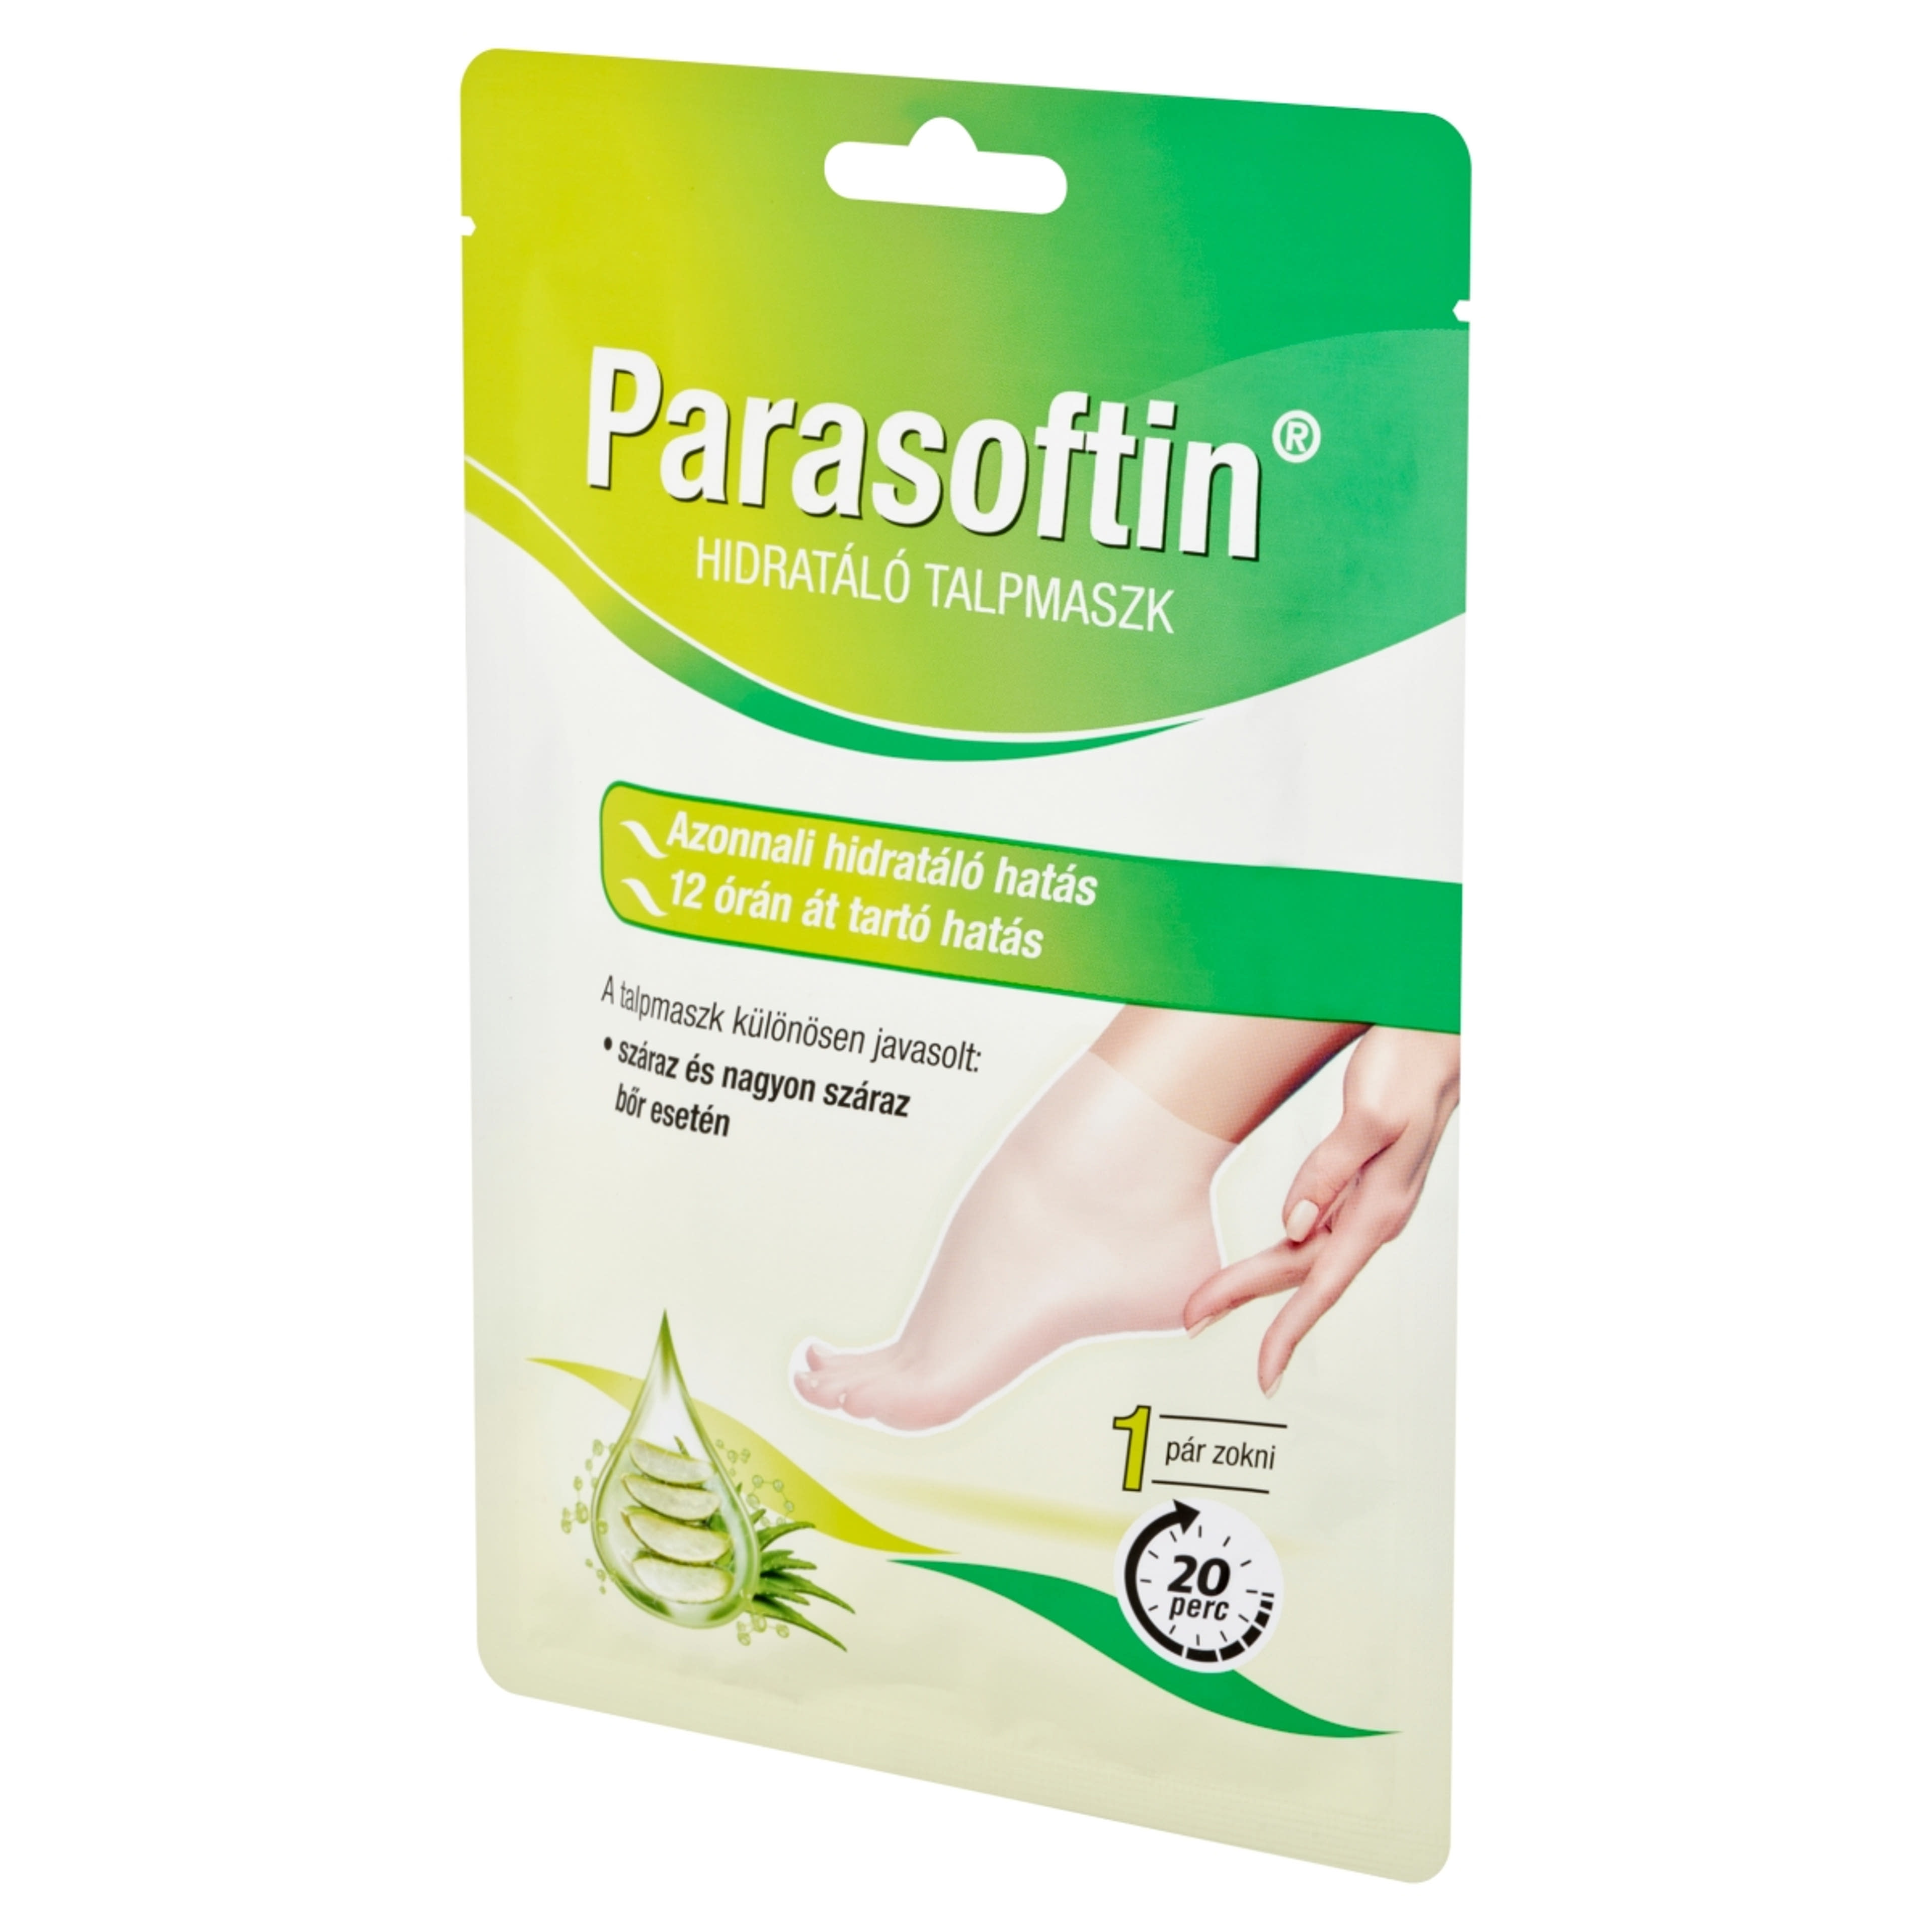 Parasofin hidratáló taplmaszk 1 pár - 1 db-3